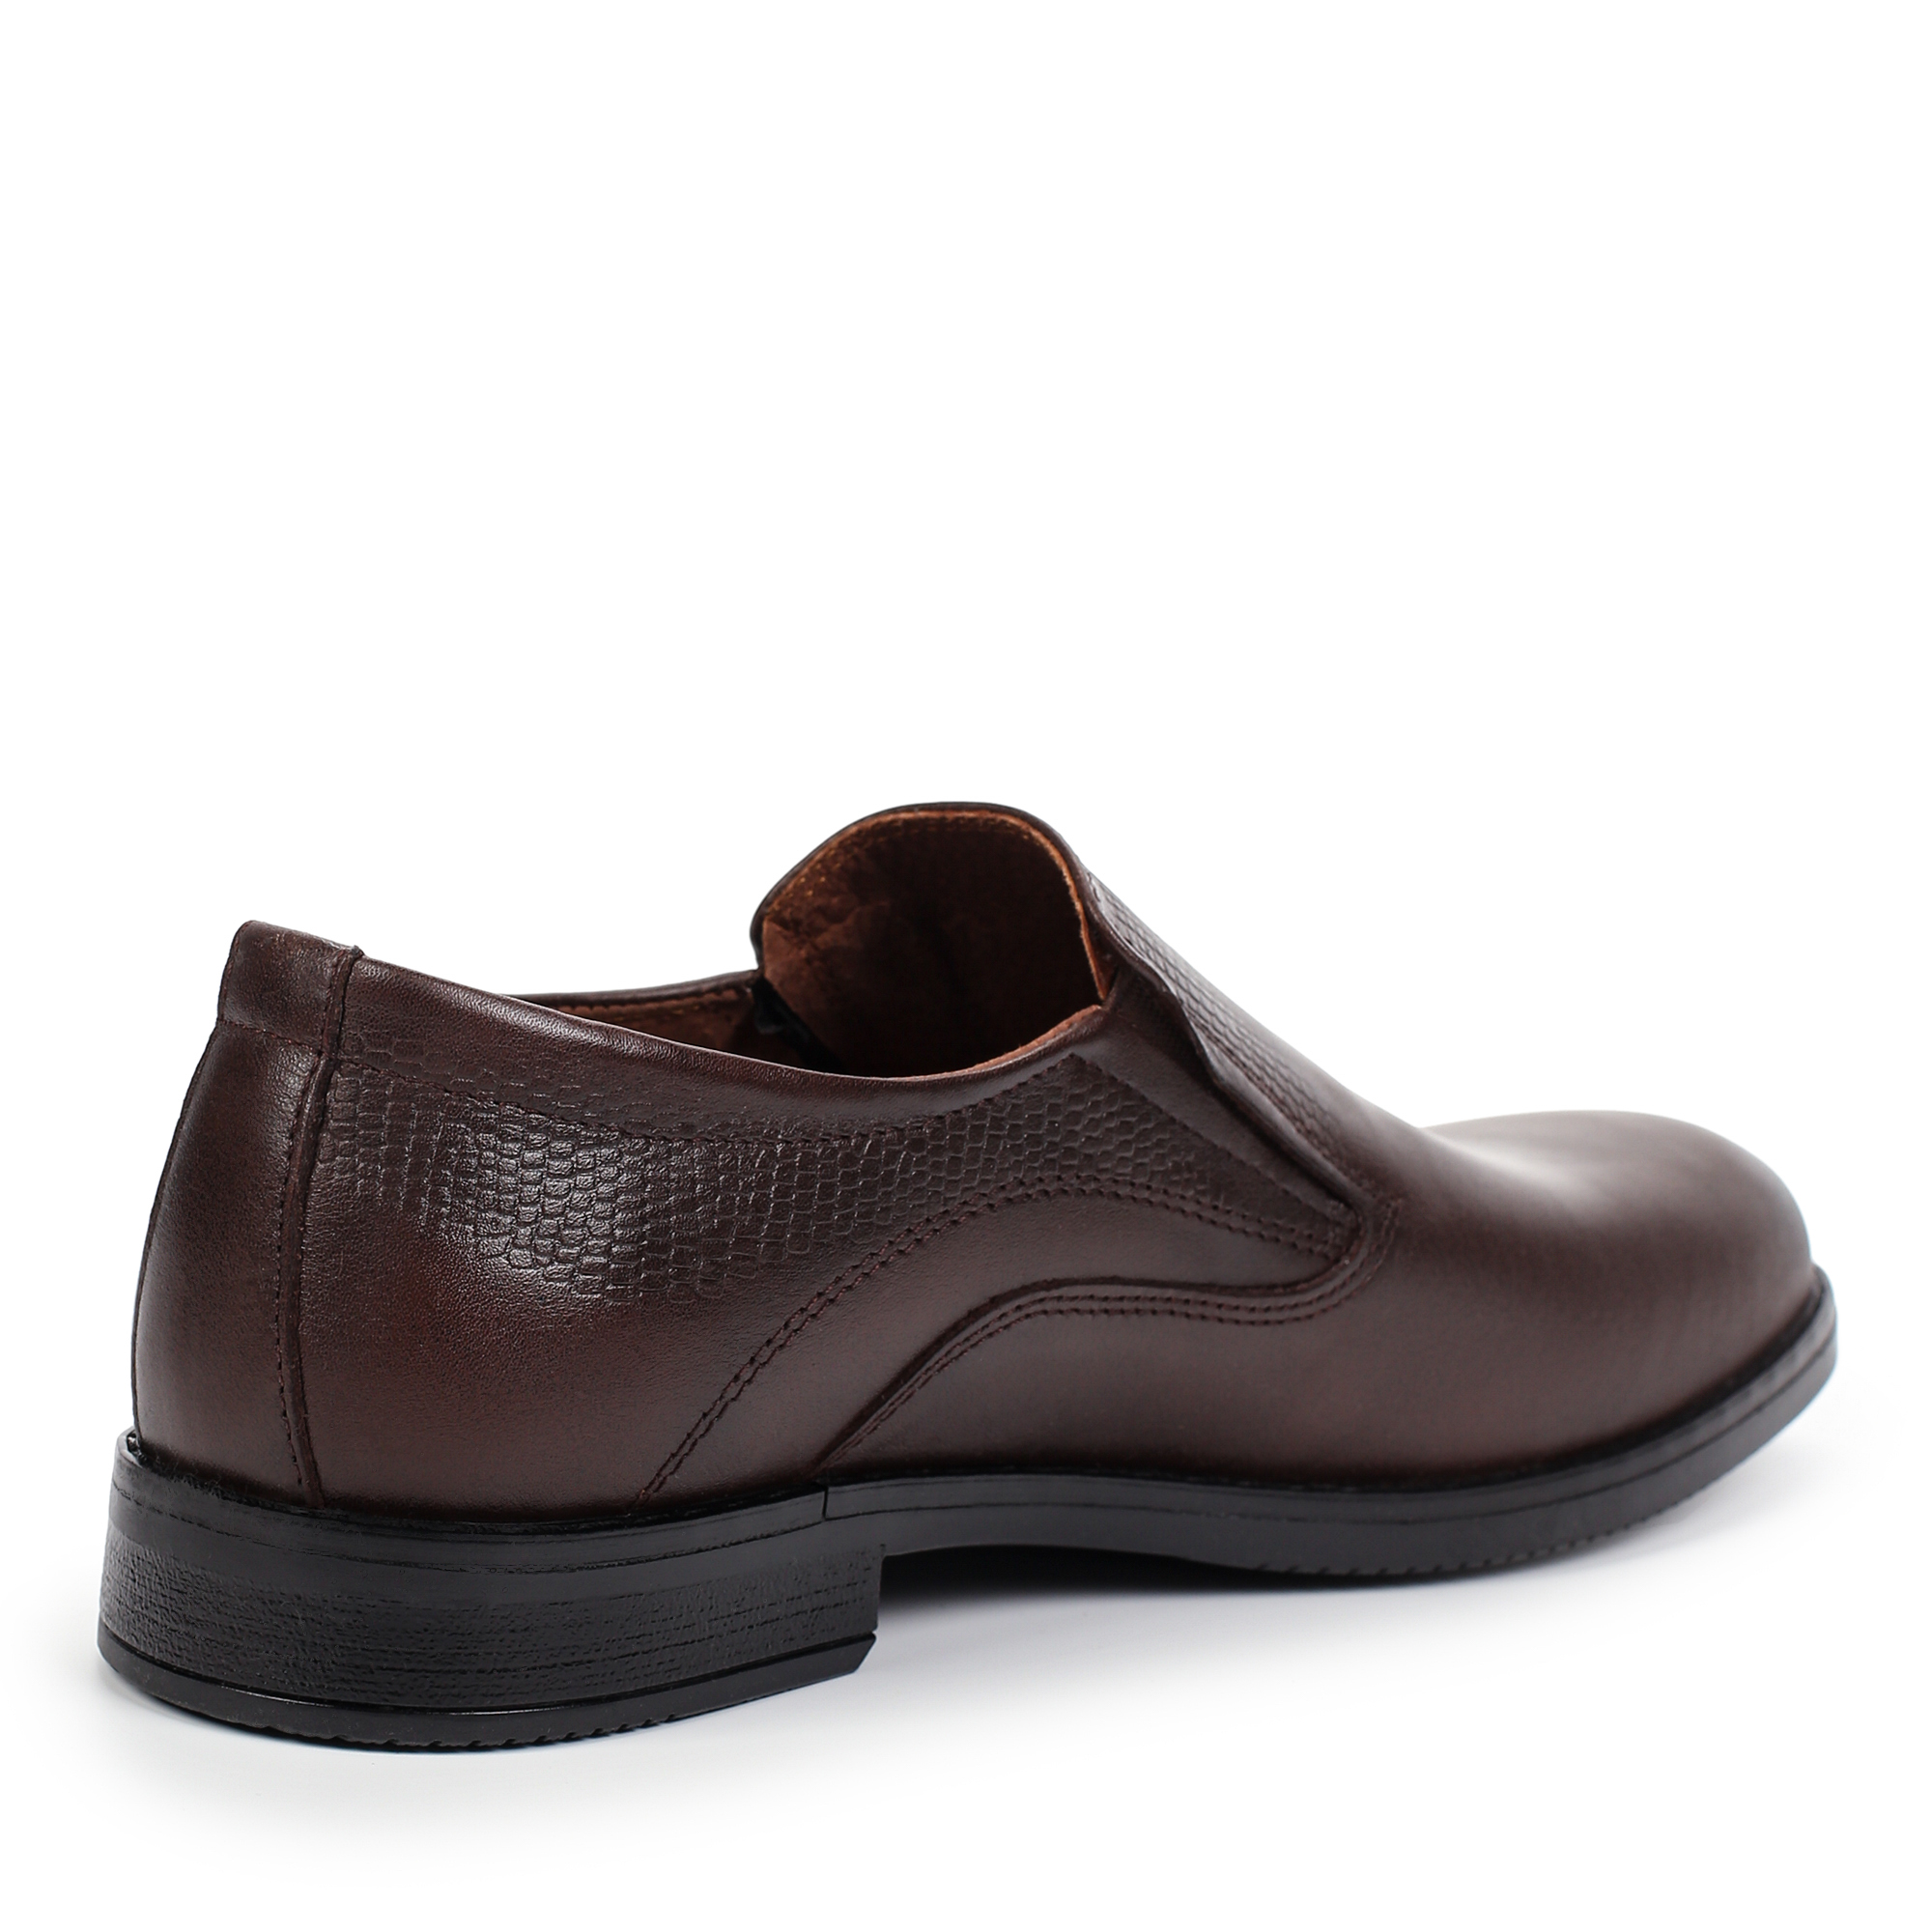 Туфли/полуботинки Thomas Munz 302-040C-1109, цвет коричневый, размер 41 - фото 3